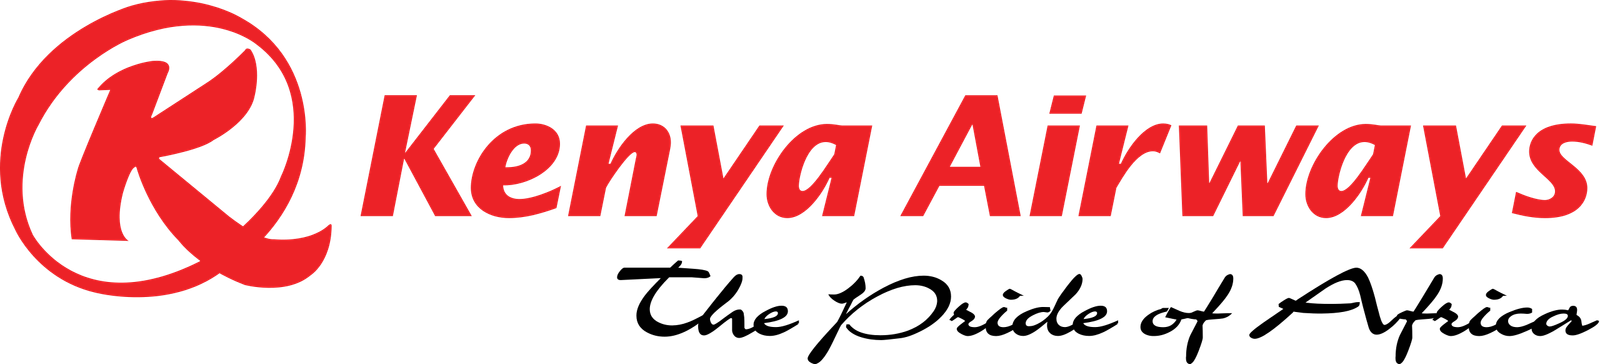 Kenya Airways Onward Ticket